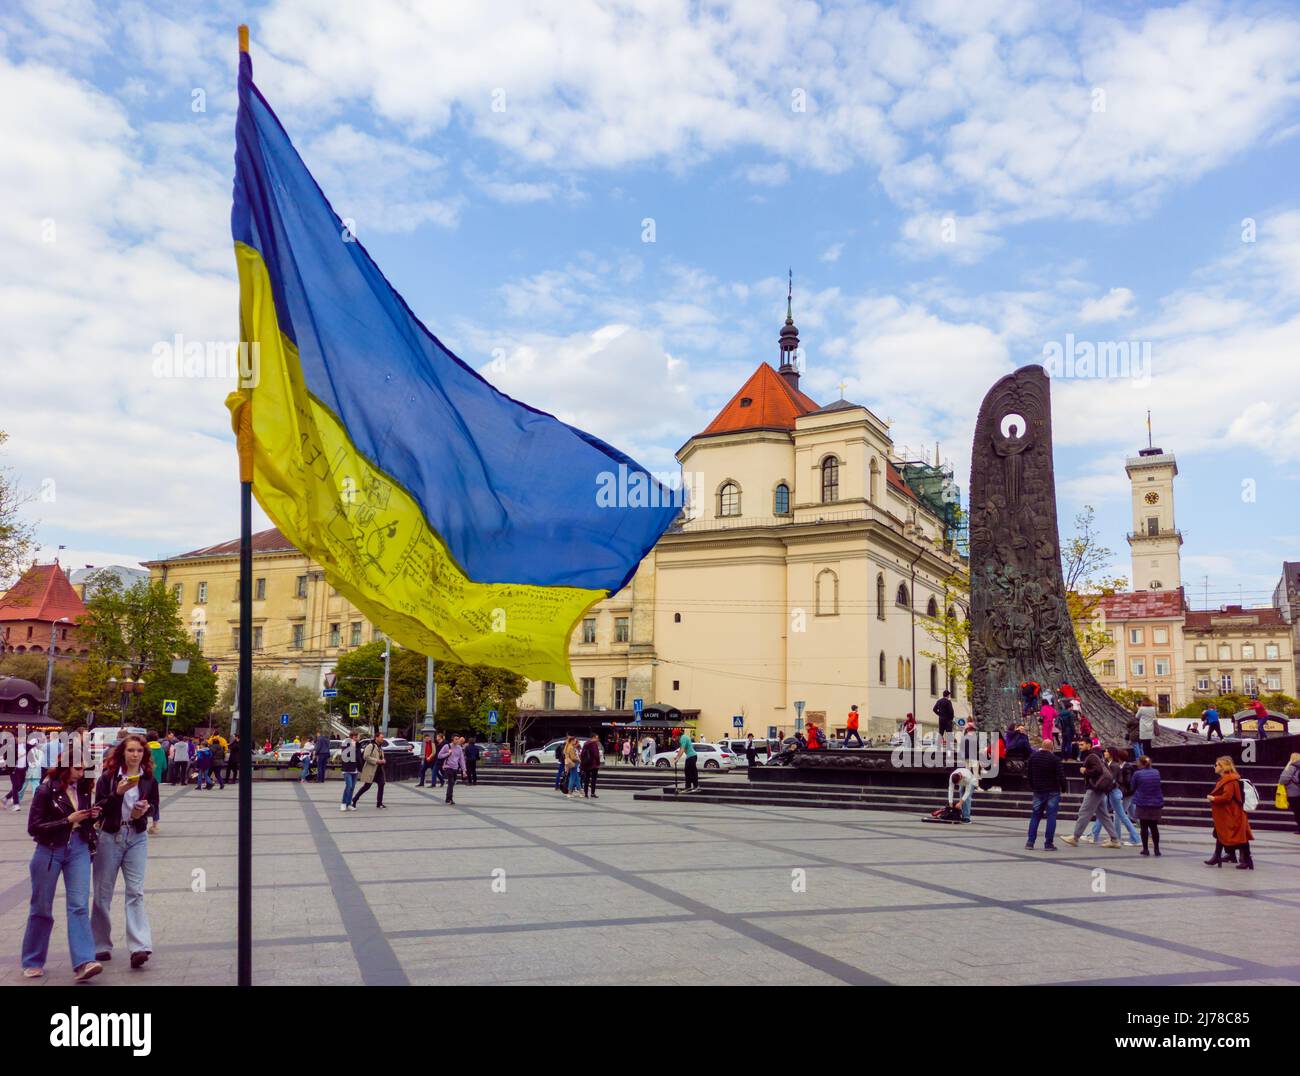 La guerra en Ucrania. Bandera ucraniana contra el fondo del Ayuntamiento de Lviv y el monumento a Taras Shevchenko Foto de stock